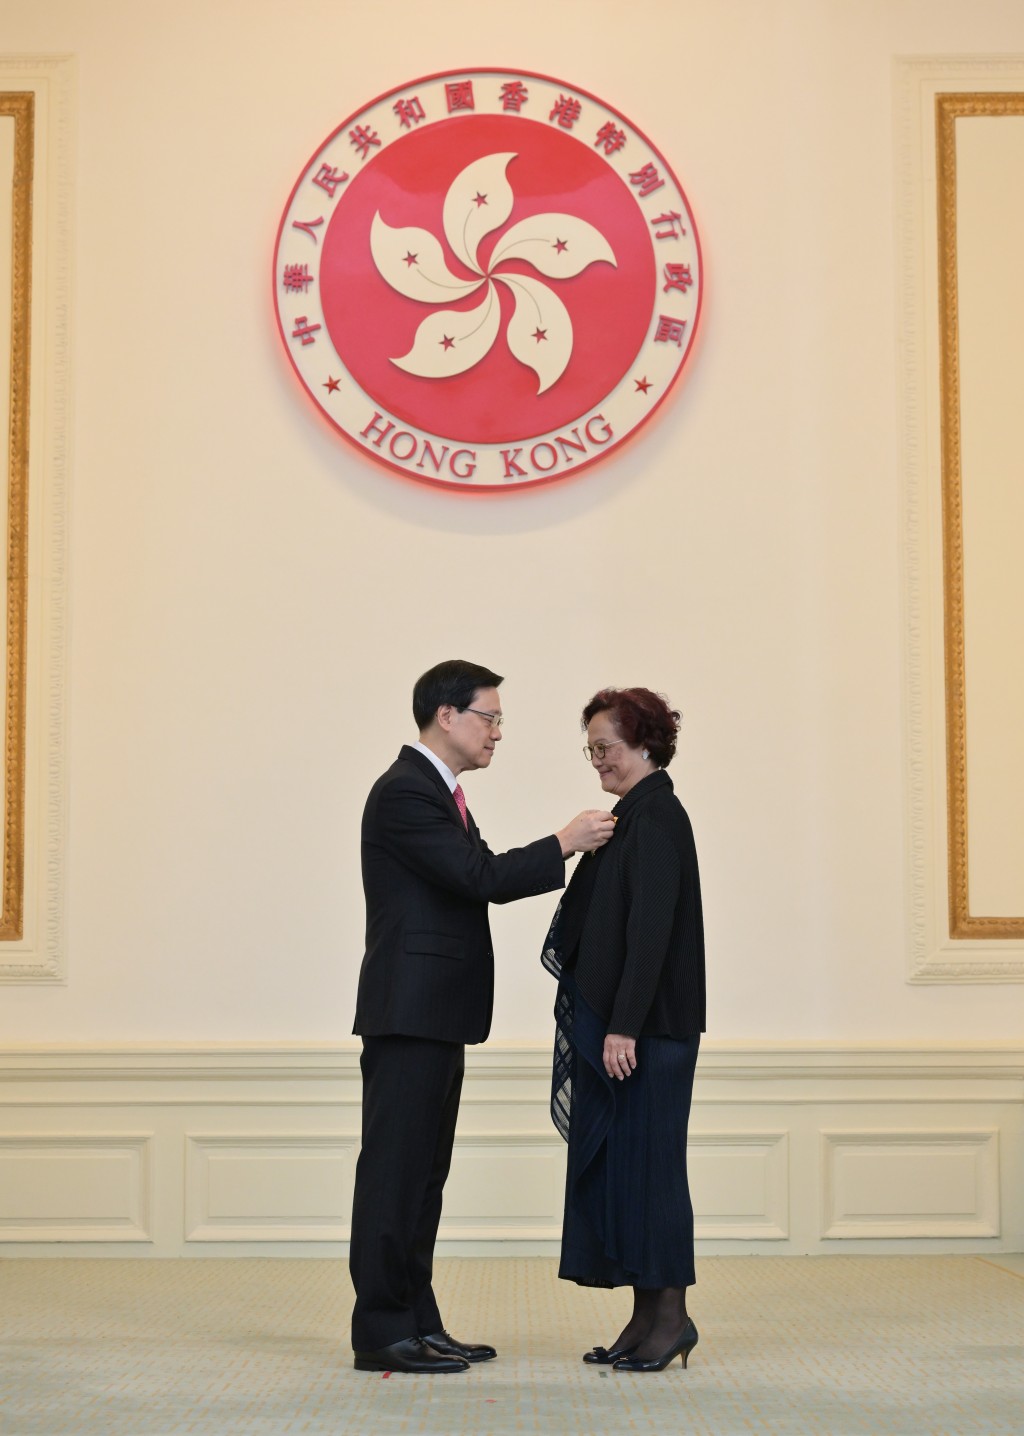 工联会荣誉会长林淑仪获颁发大紫荆勋章。政府新闻处图片